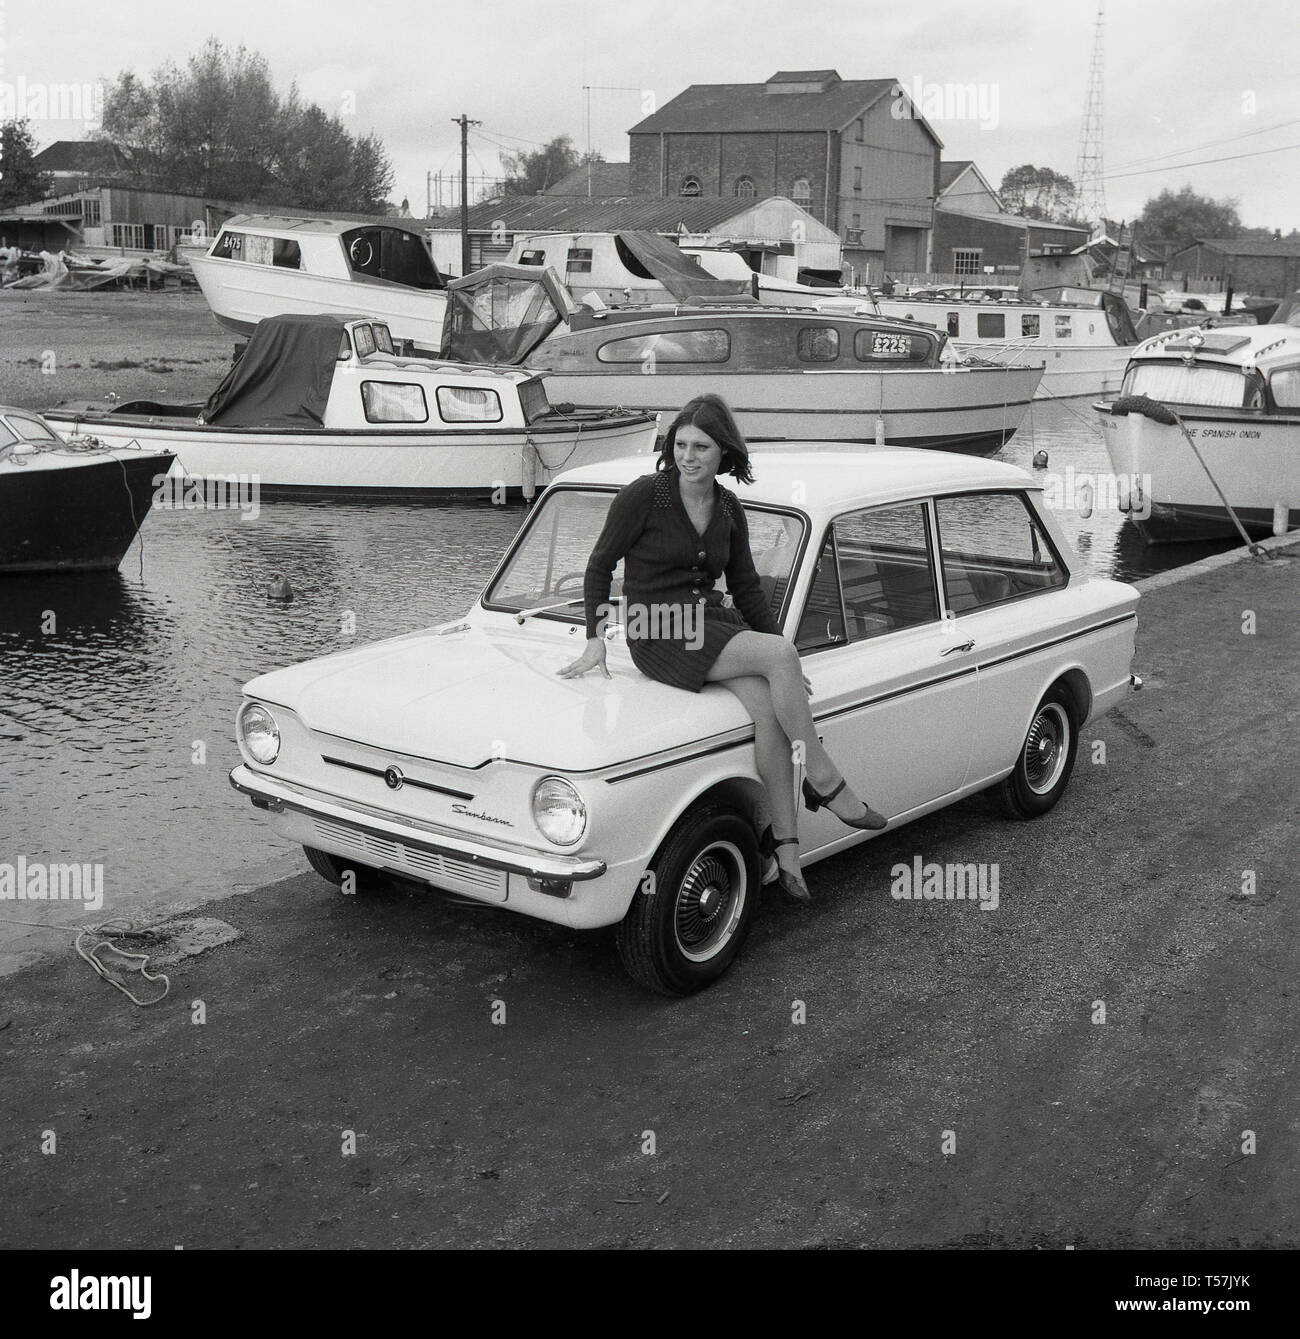 1967, historique, à l'extérieur dans un chantier naval, une jeune femme portant un cardigan en laine et une jupe assise sur le coffre d'une voiture Sunbeam Sport, la version sportive de la célèbre petite voiture, la Hillman Imp. La Hillman Imp était une petite voiture fabriquée par Rootes Group et son successeur Chrysler Europe de 1963 à 1976. C'était le concurrent dans la catégorie des petites voitures de la British Leyland Mini. Banque D'Images